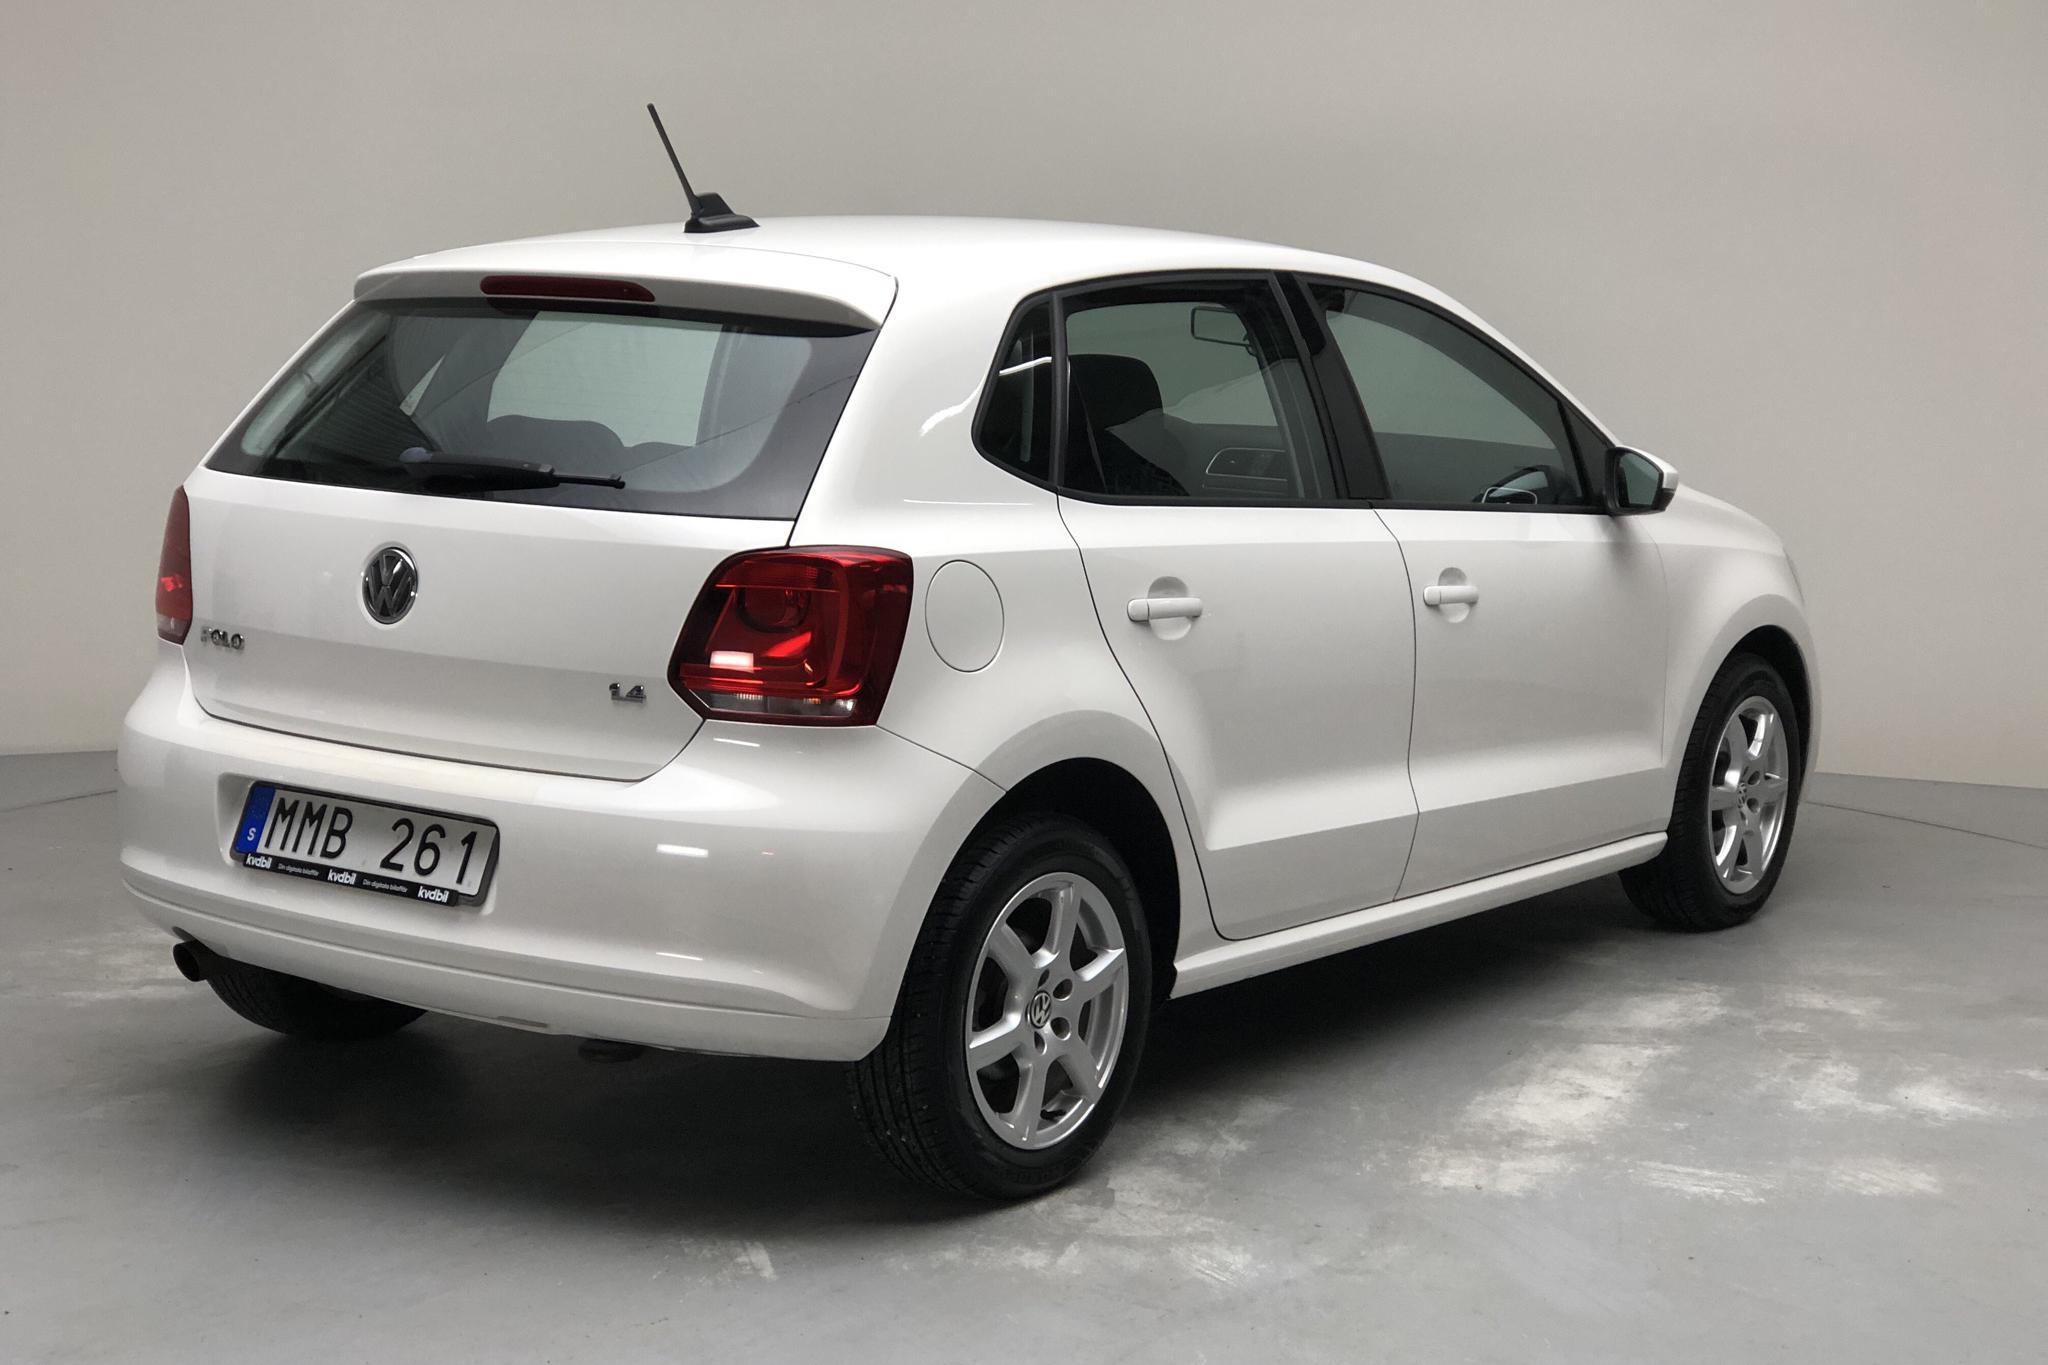 VW Polo 1.4 5dr (85hk) - 77 270 km - Automatic - white - 2014